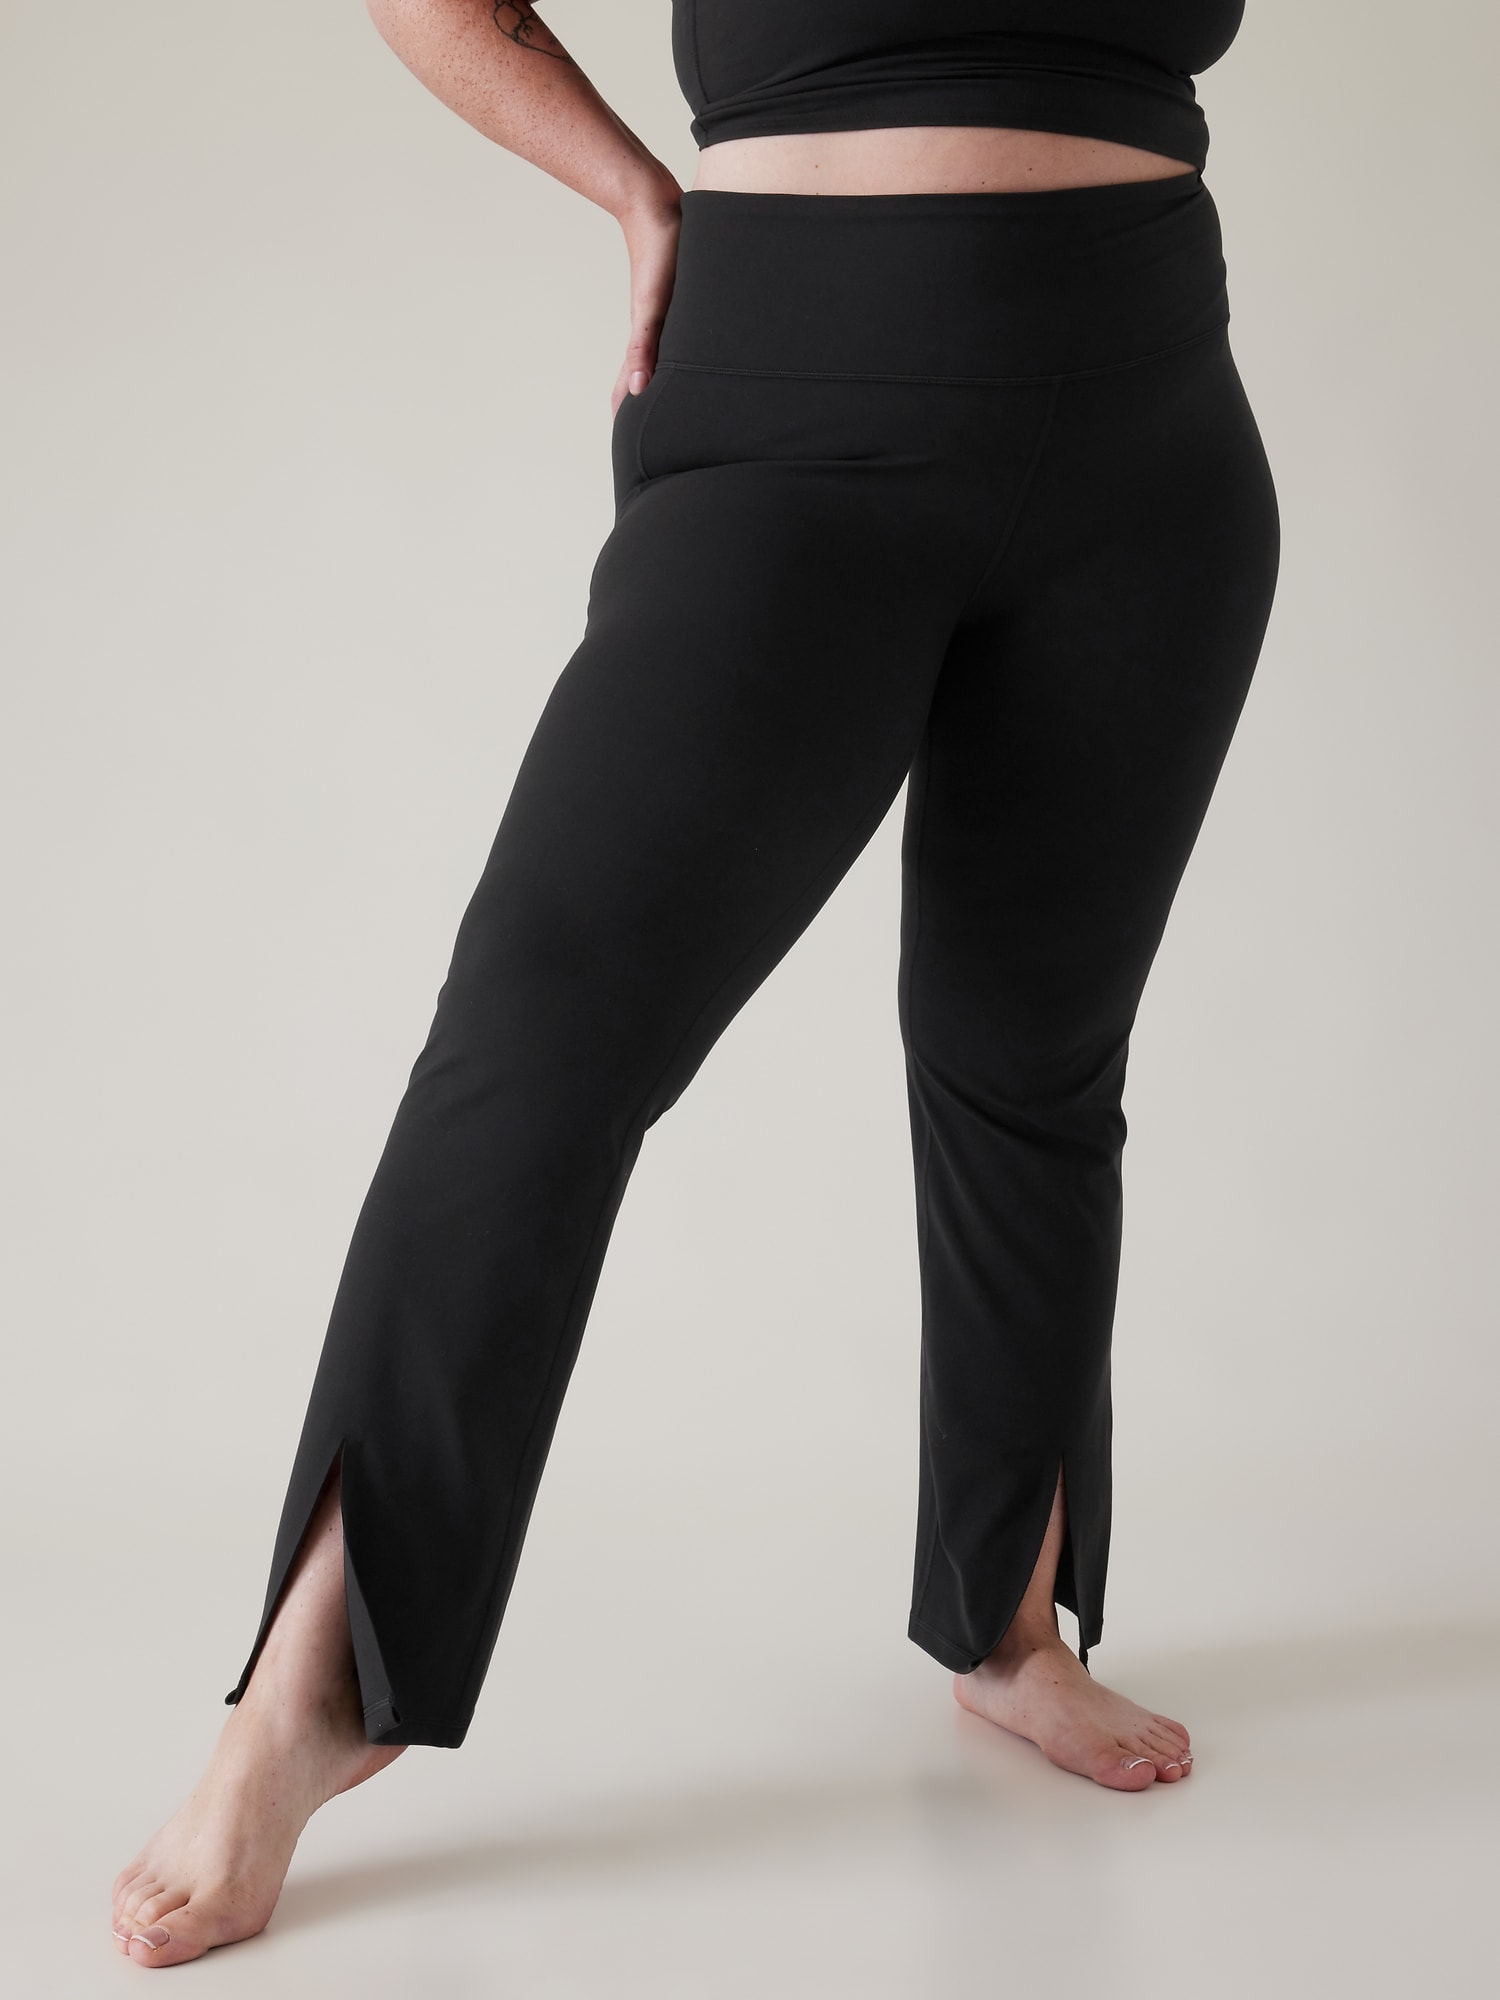 Athleta Large Black Elation Flare Pant NEW! Yoga Fitness #981683